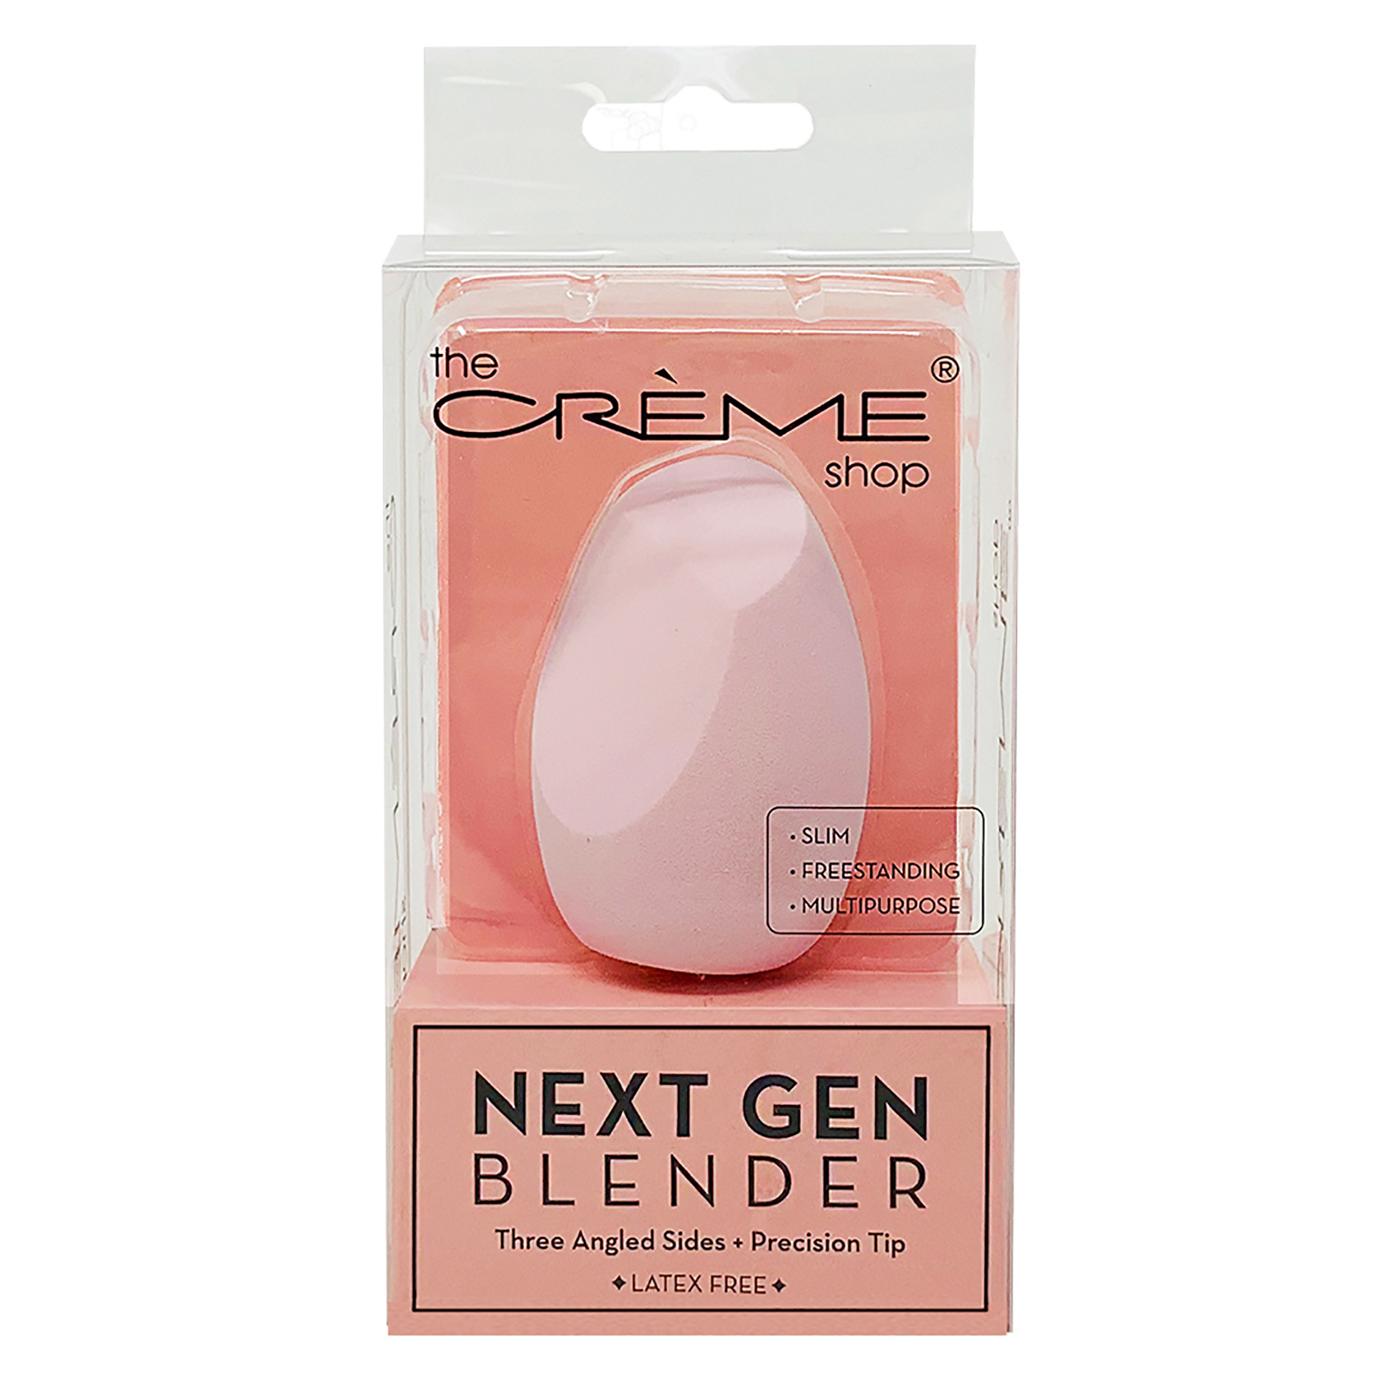 The Crème Shop Pink Next Gen Blender; image 1 of 2